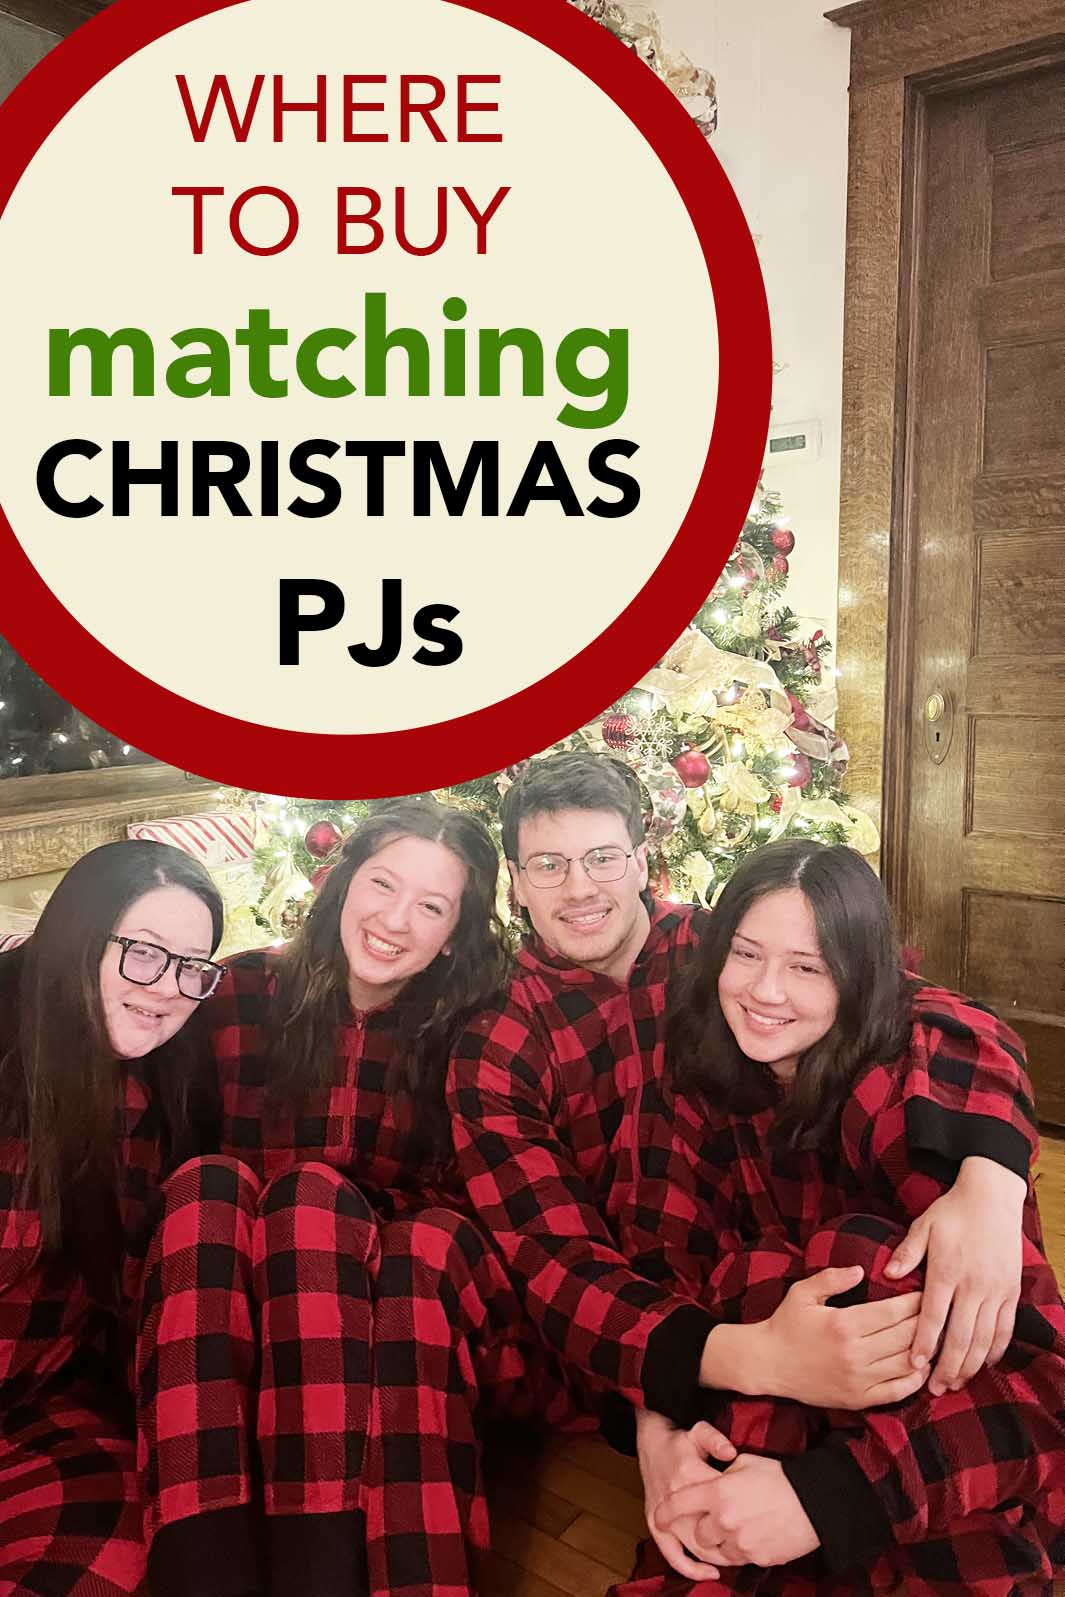 Jammies For Your Families Christmas Morning Pajamas